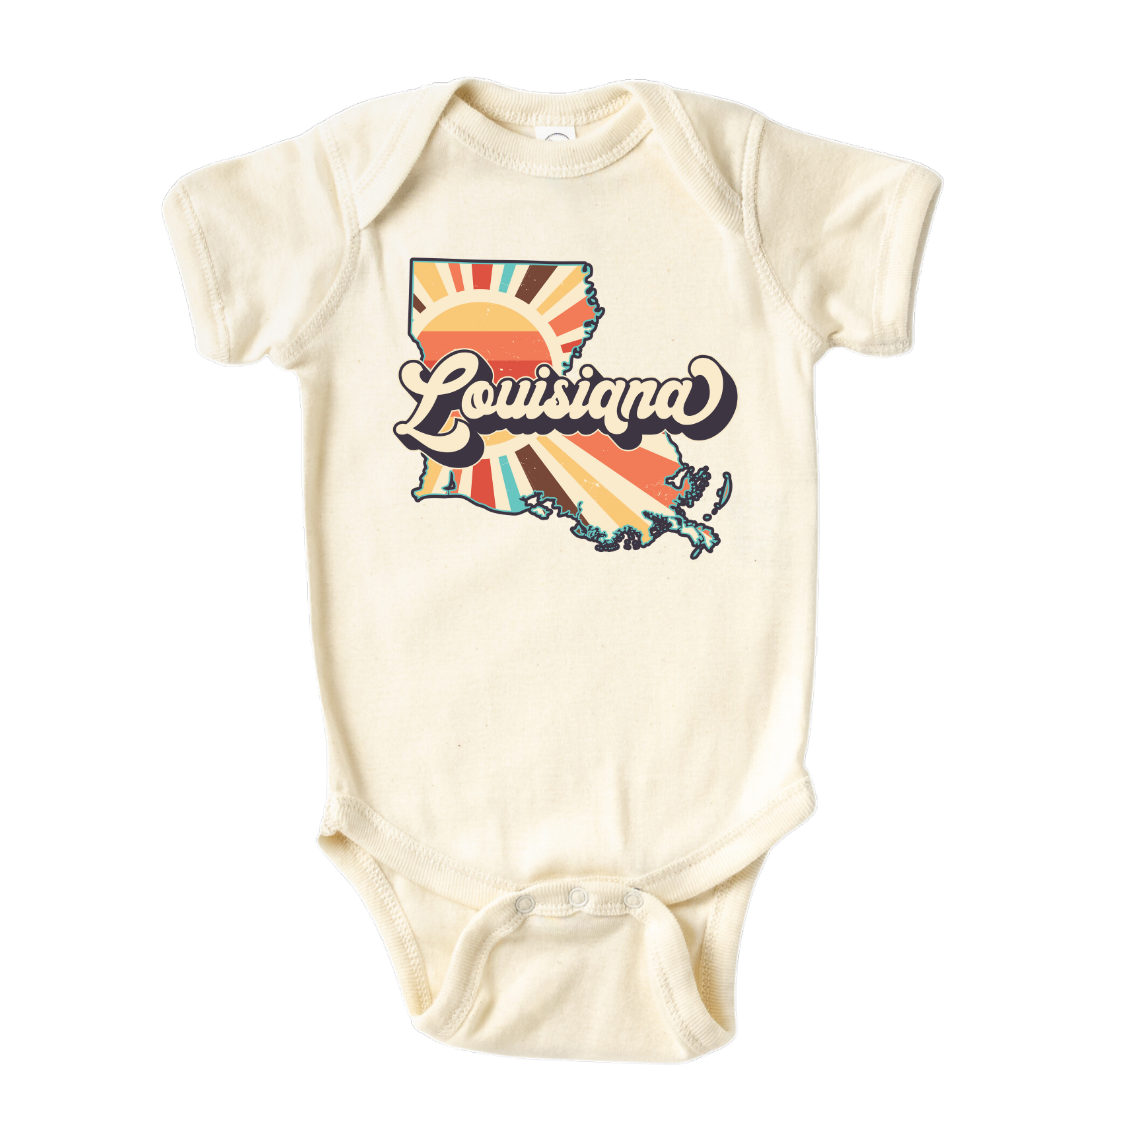 Louisiana Baby Onesie® Louisiana State Shirt for Kids Tshirt Louisiana Bodysuit for Baby Gift